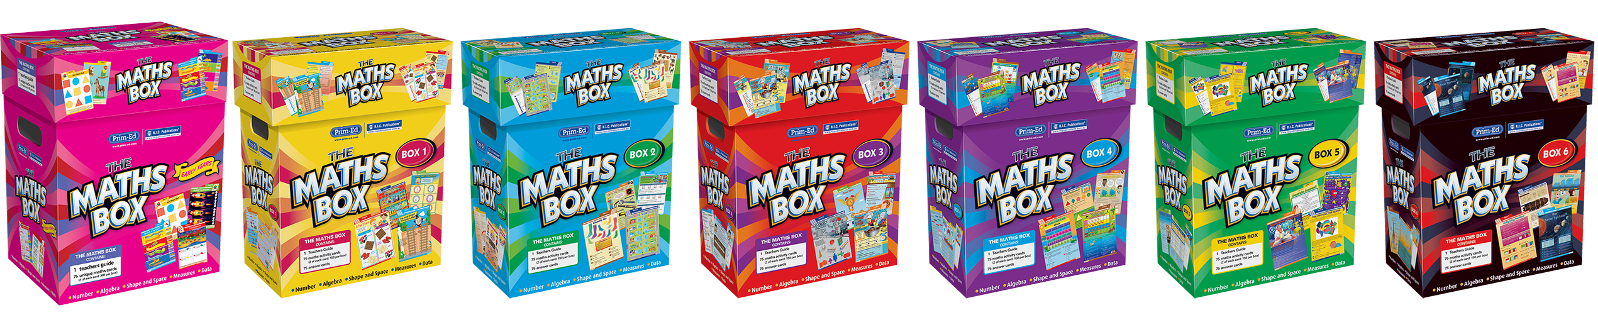 The maths box